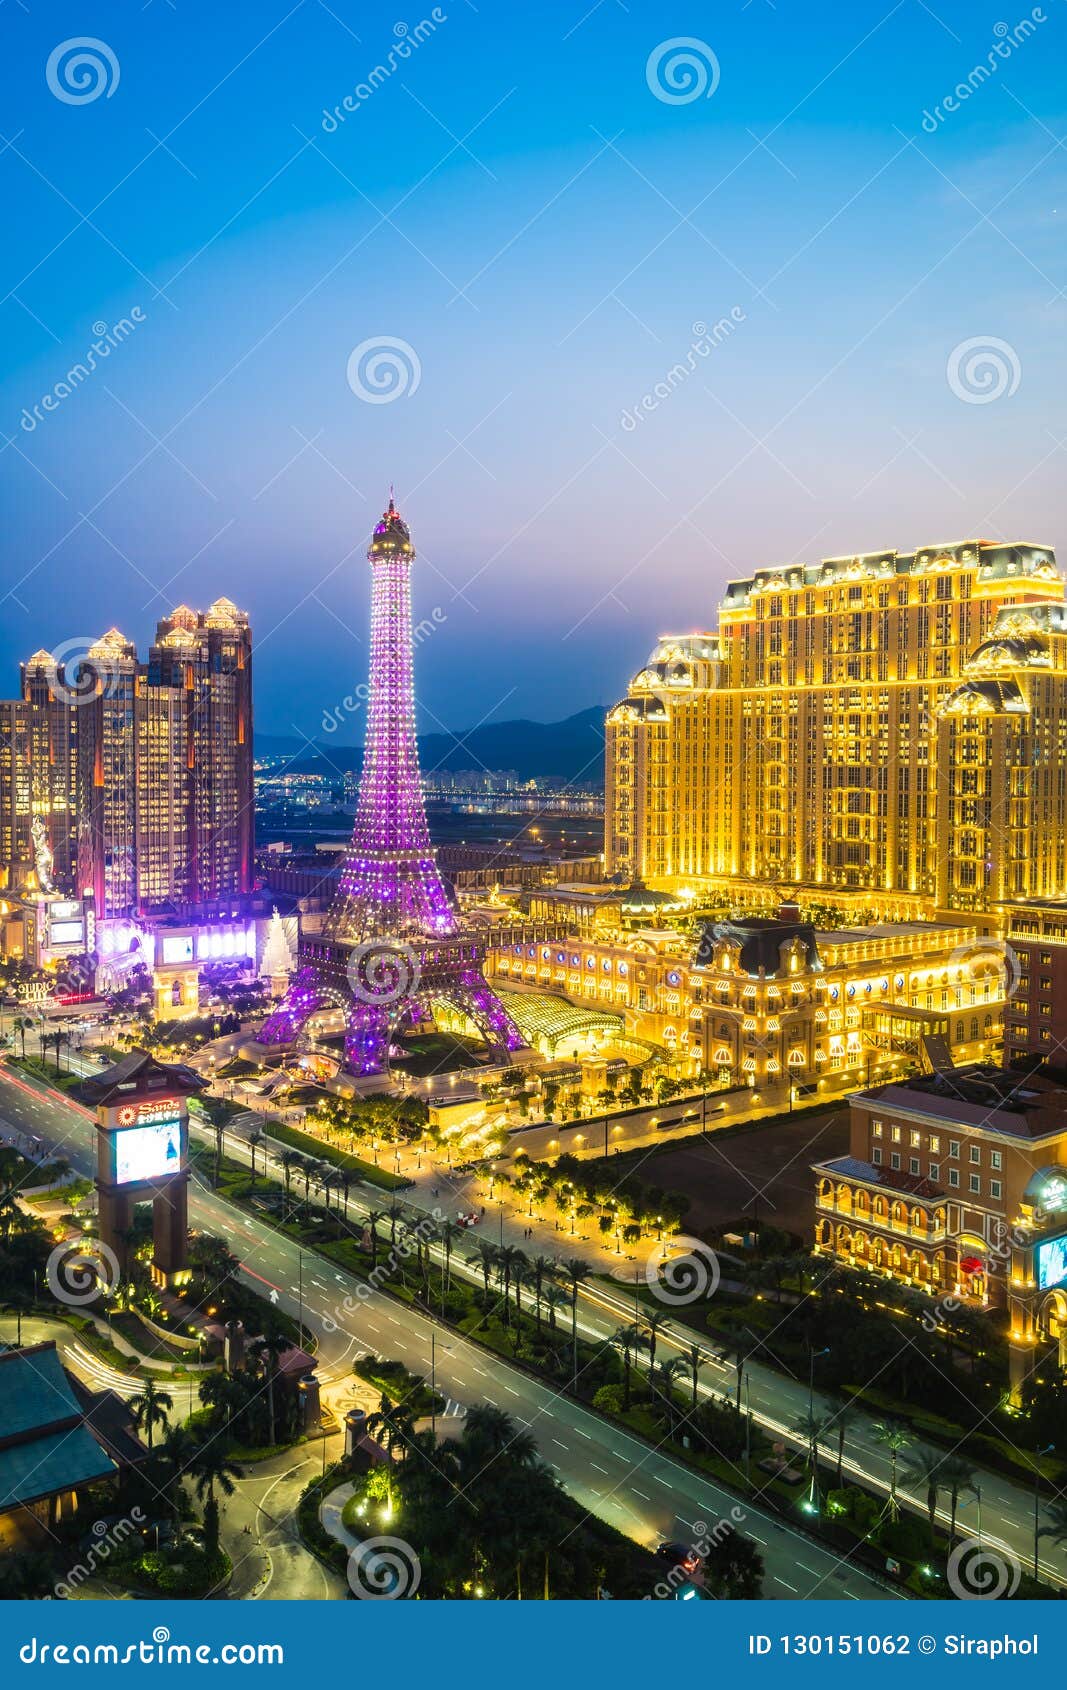 Hotel In Macau With Casino